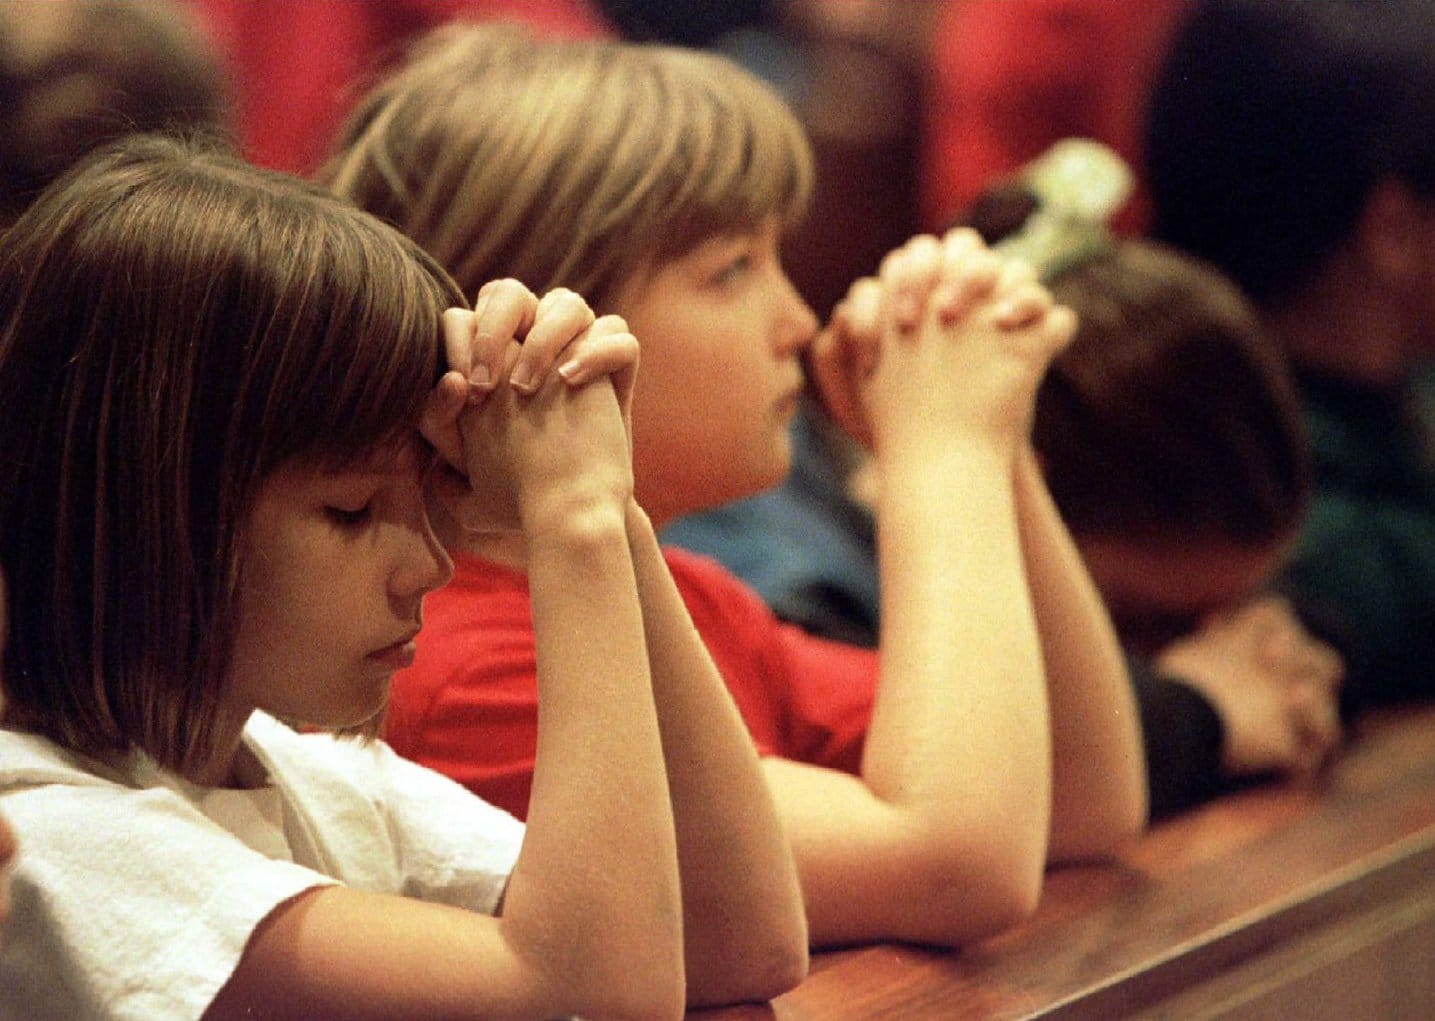 Children pray